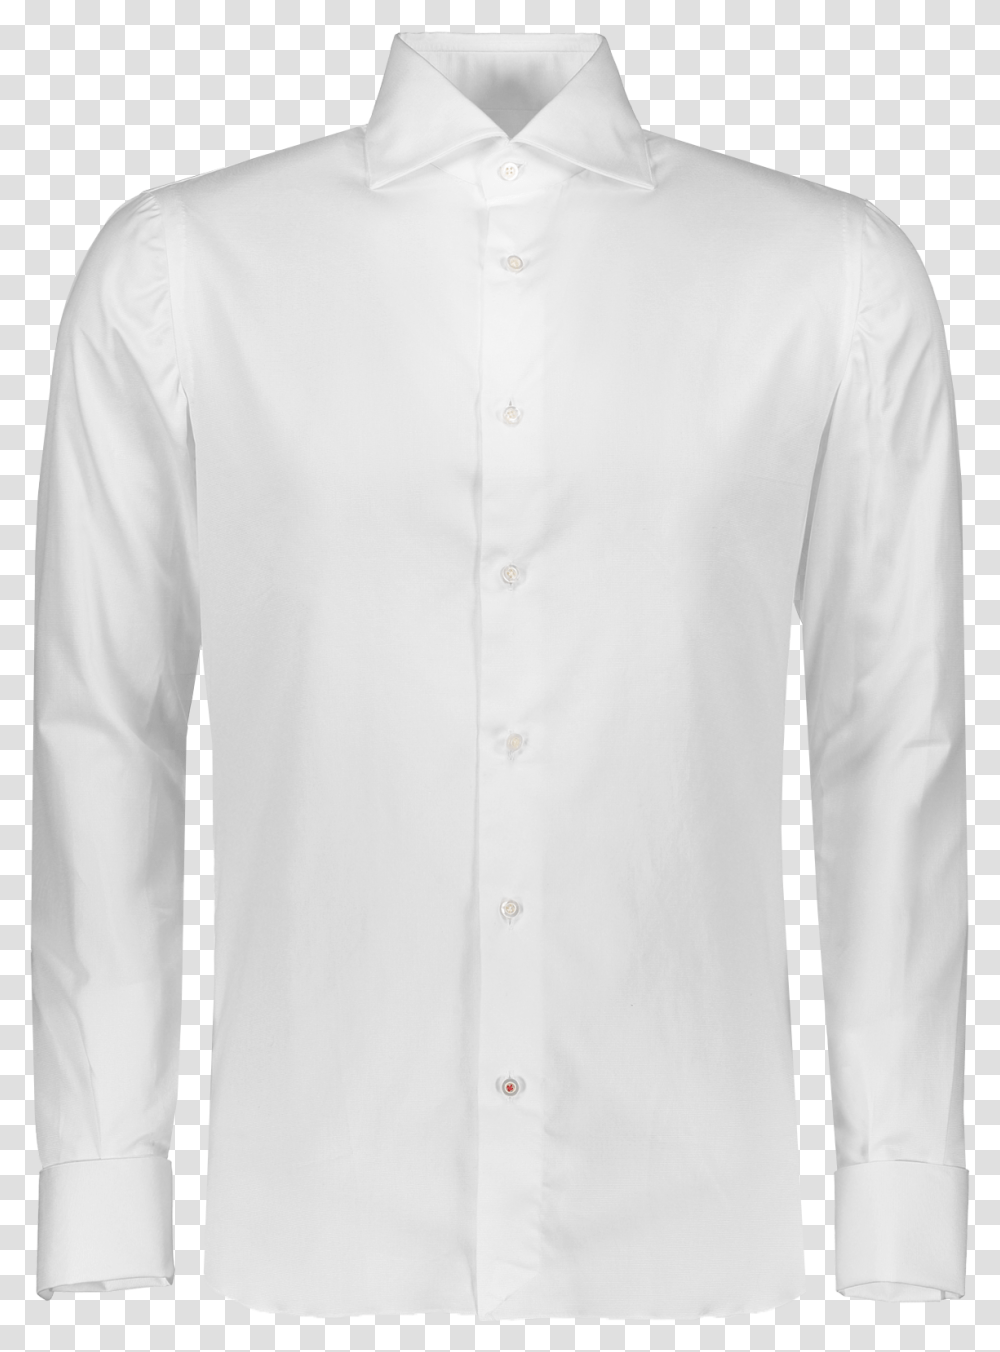 Tuxedo Ls Woven Sleeve, Apparel, Shirt, Dress Shirt Transparent Png